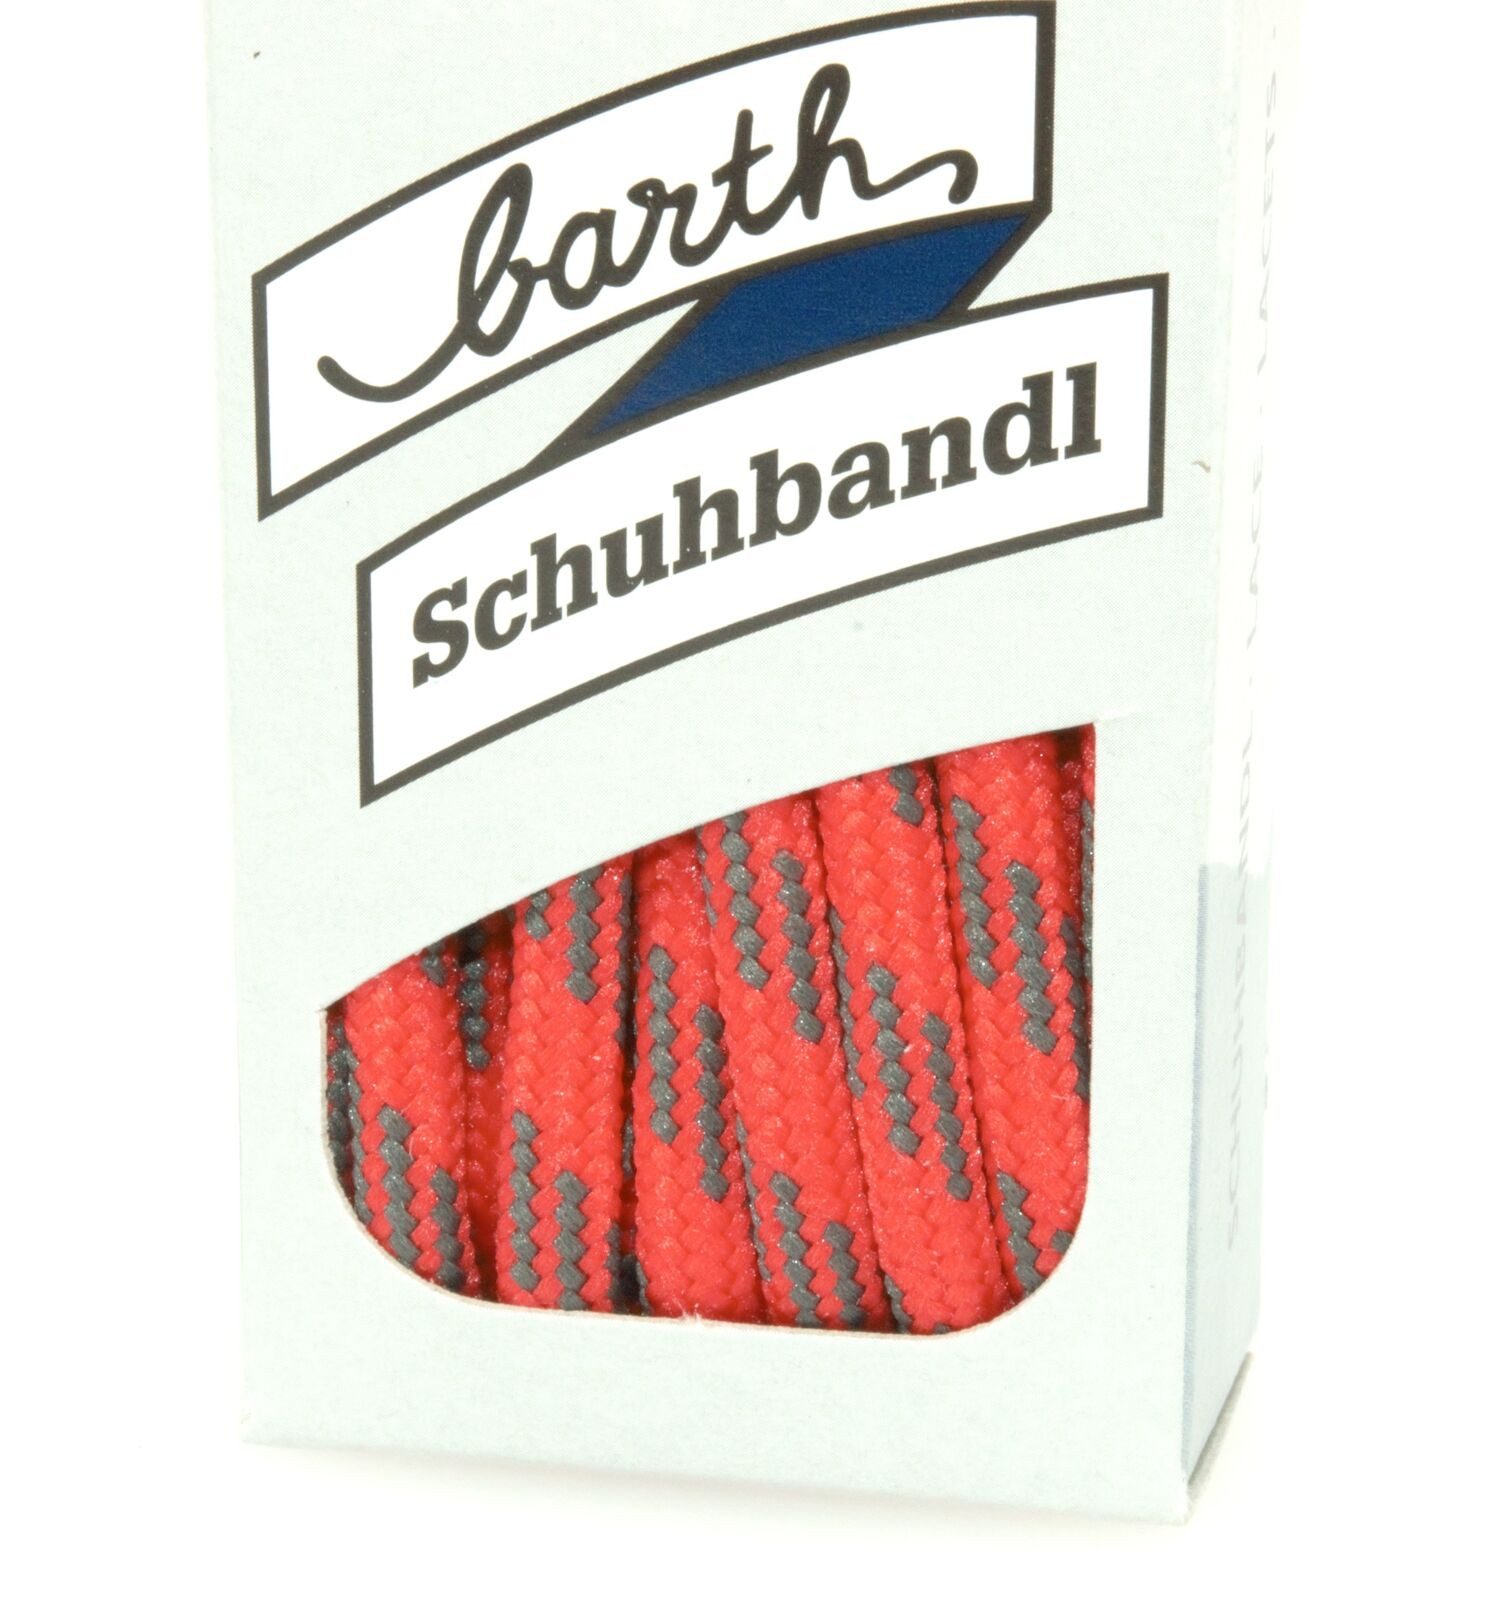 barth schuhbandl Schnürsenkel Barth Schnürsenkel Bergsport Rot-Grau - 762, runde Extra Starke Reißfeste 5mm Rundsenkel